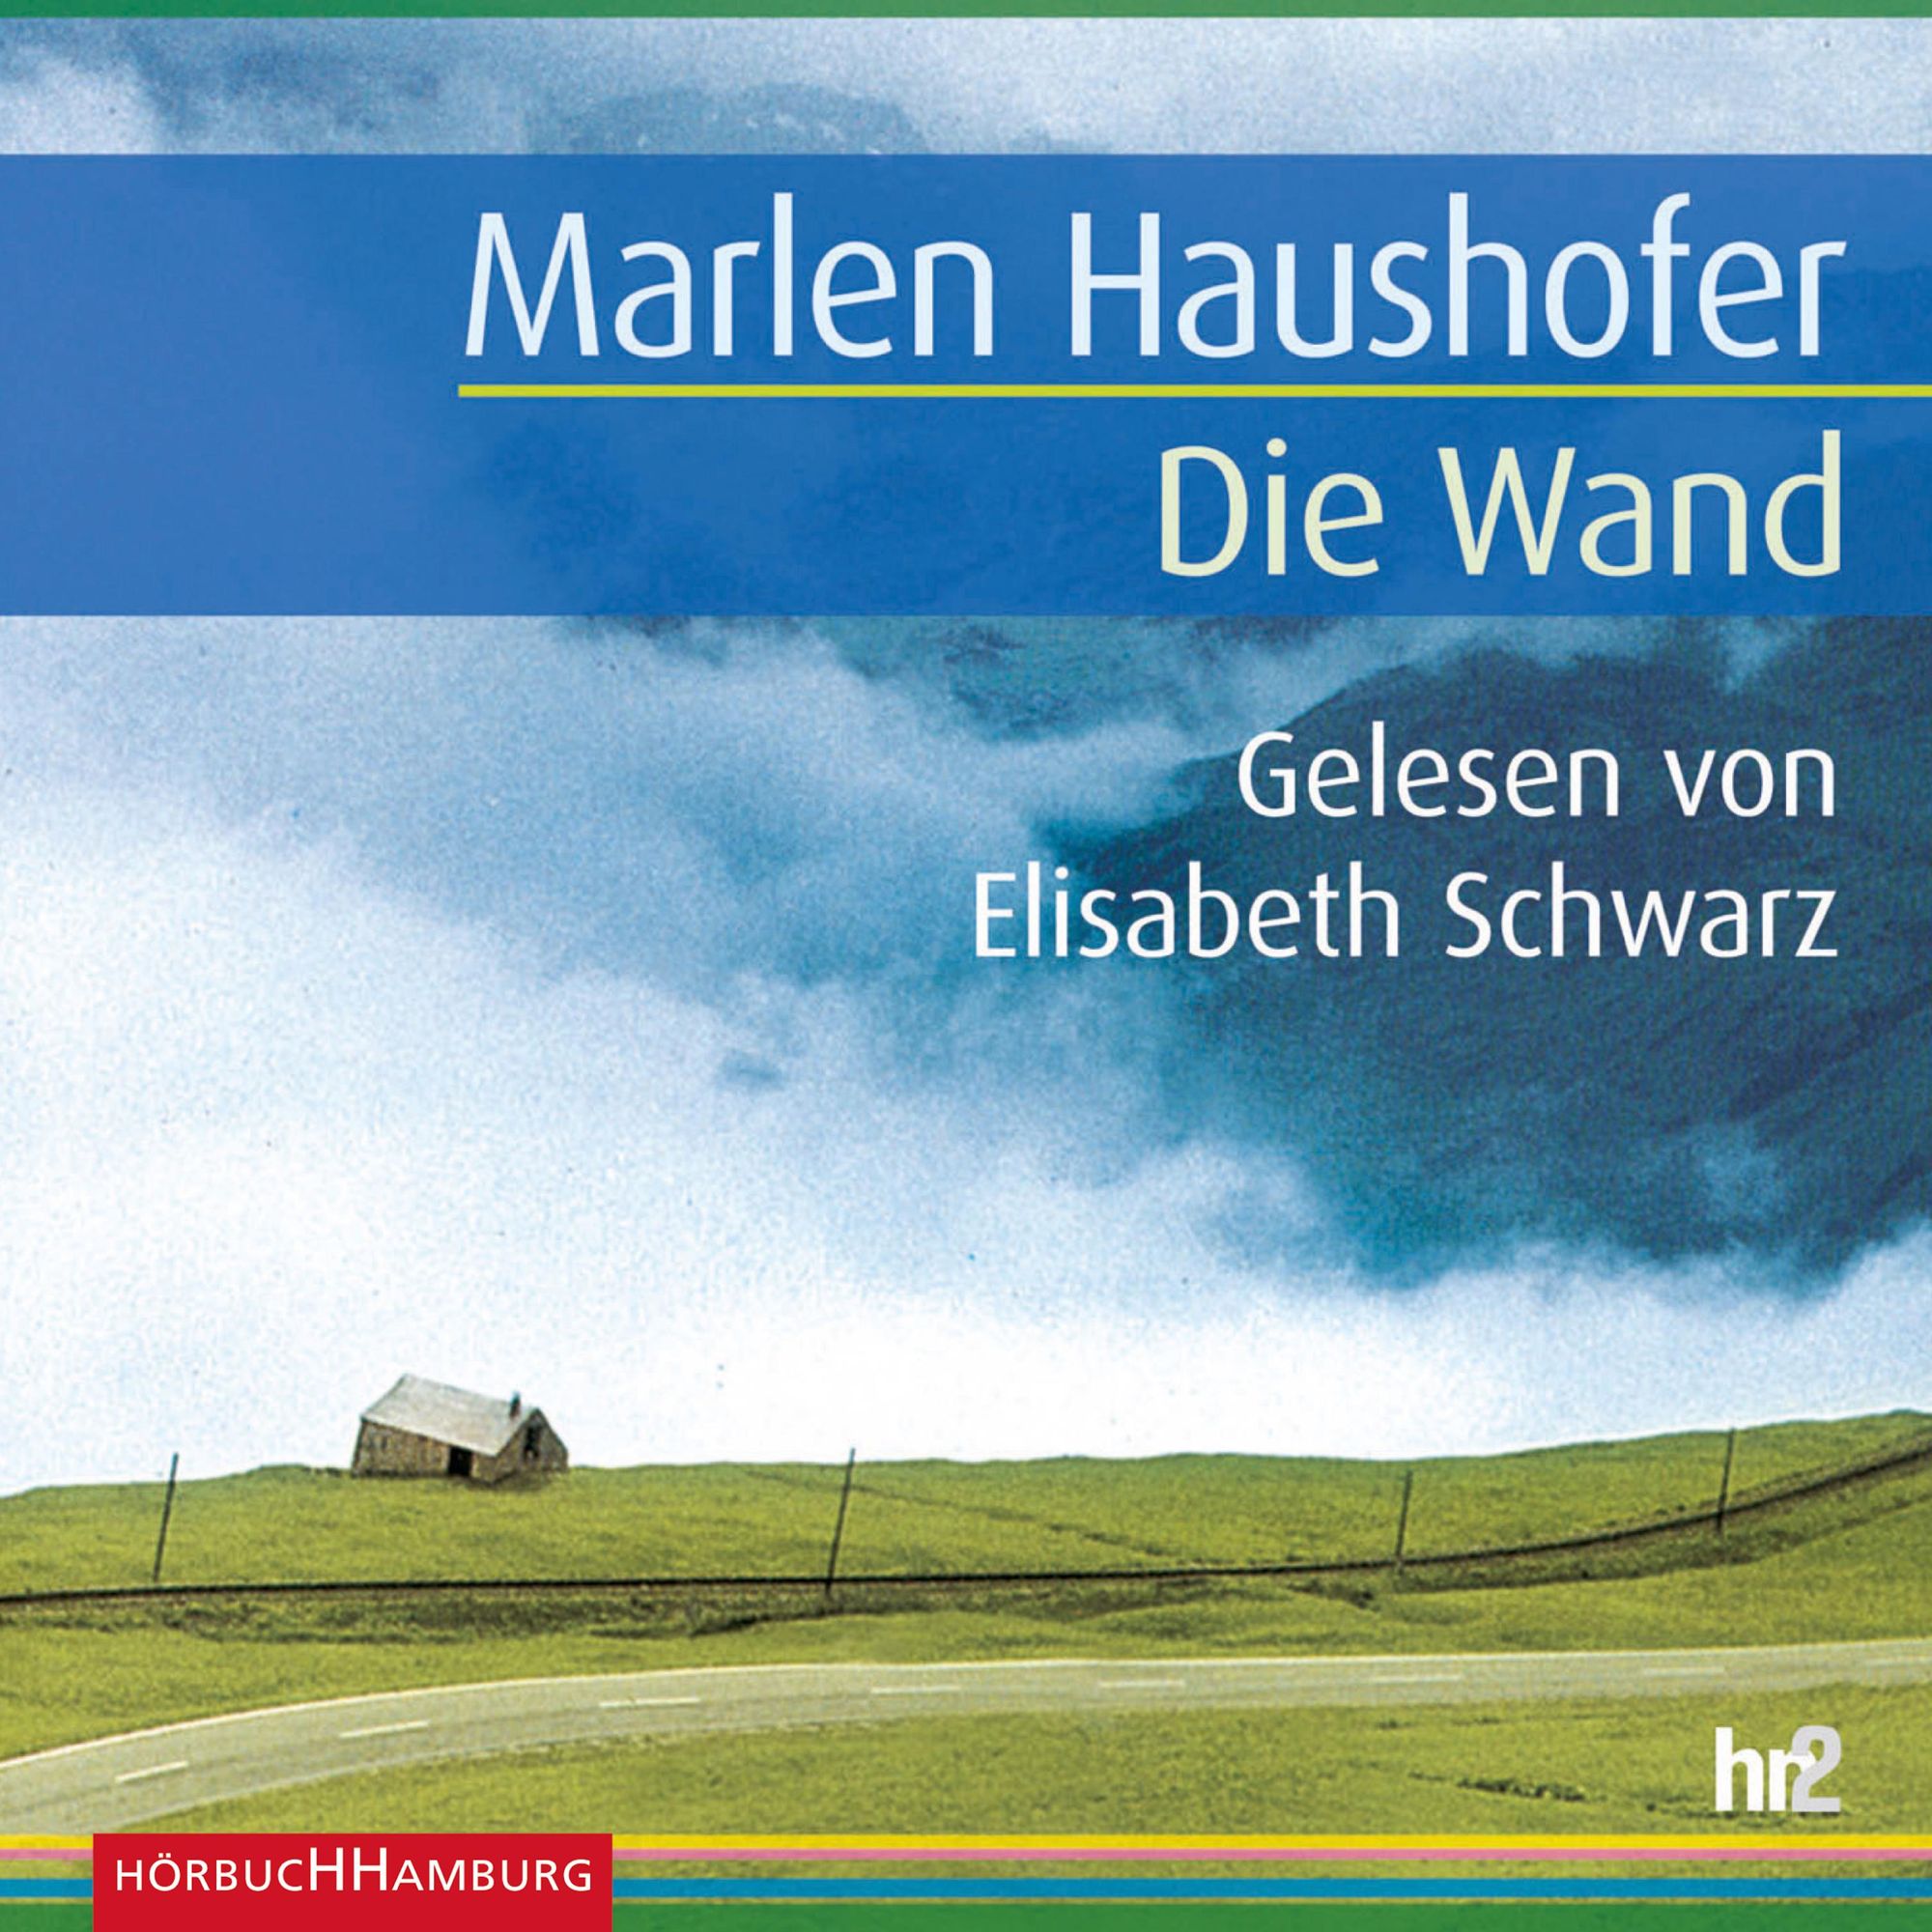 Die Wand von Marlen Haushofer. Hörbuch-Downloads | Orell Füssli